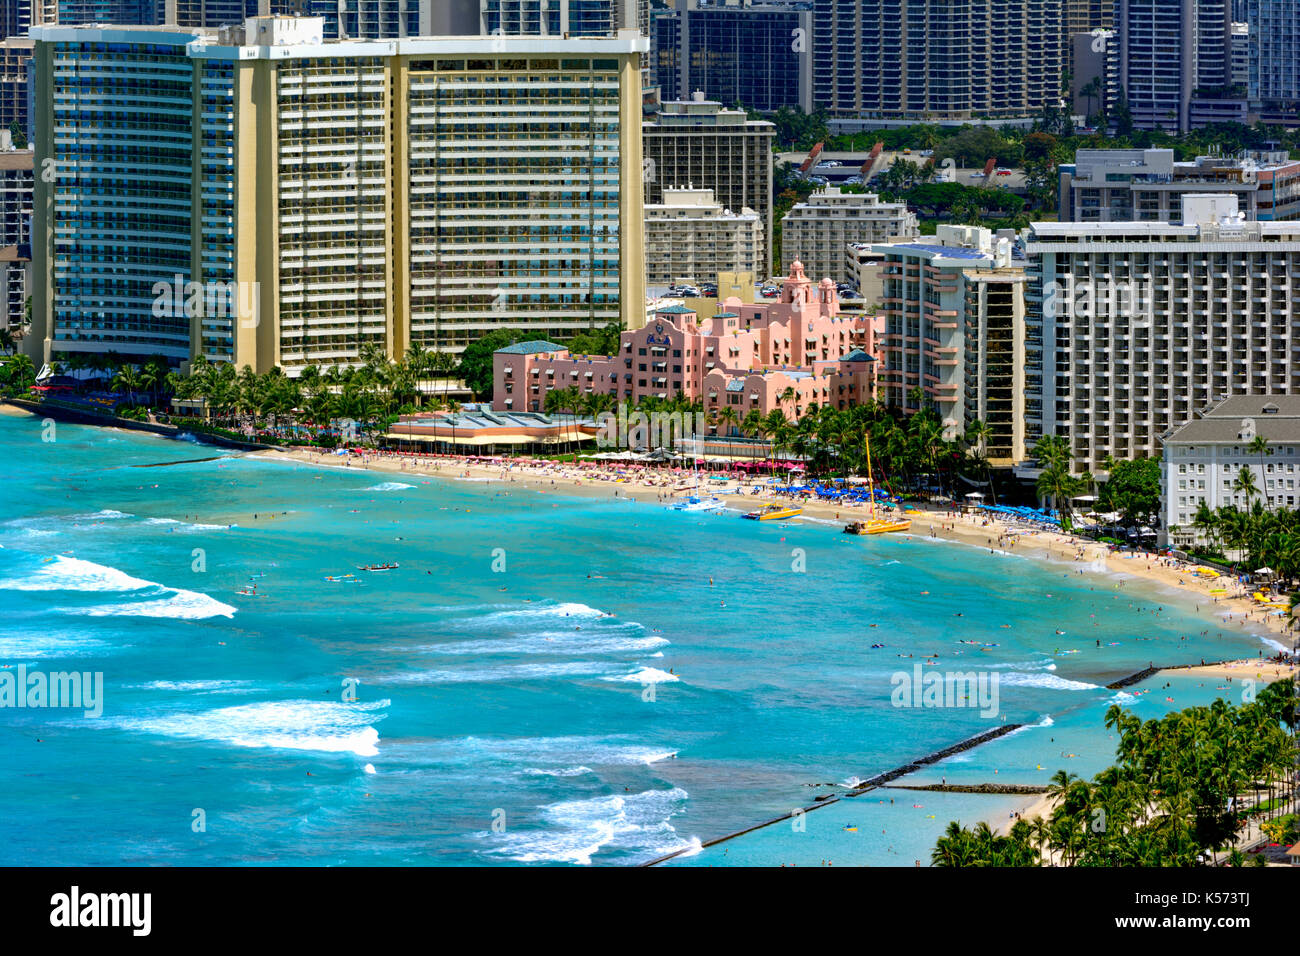 La spiaggia di Waikiki con costa e alberghi in background. edificio rosa, alberghi, barche a vela catamarano, nuotatori e surfisti Foto Stock